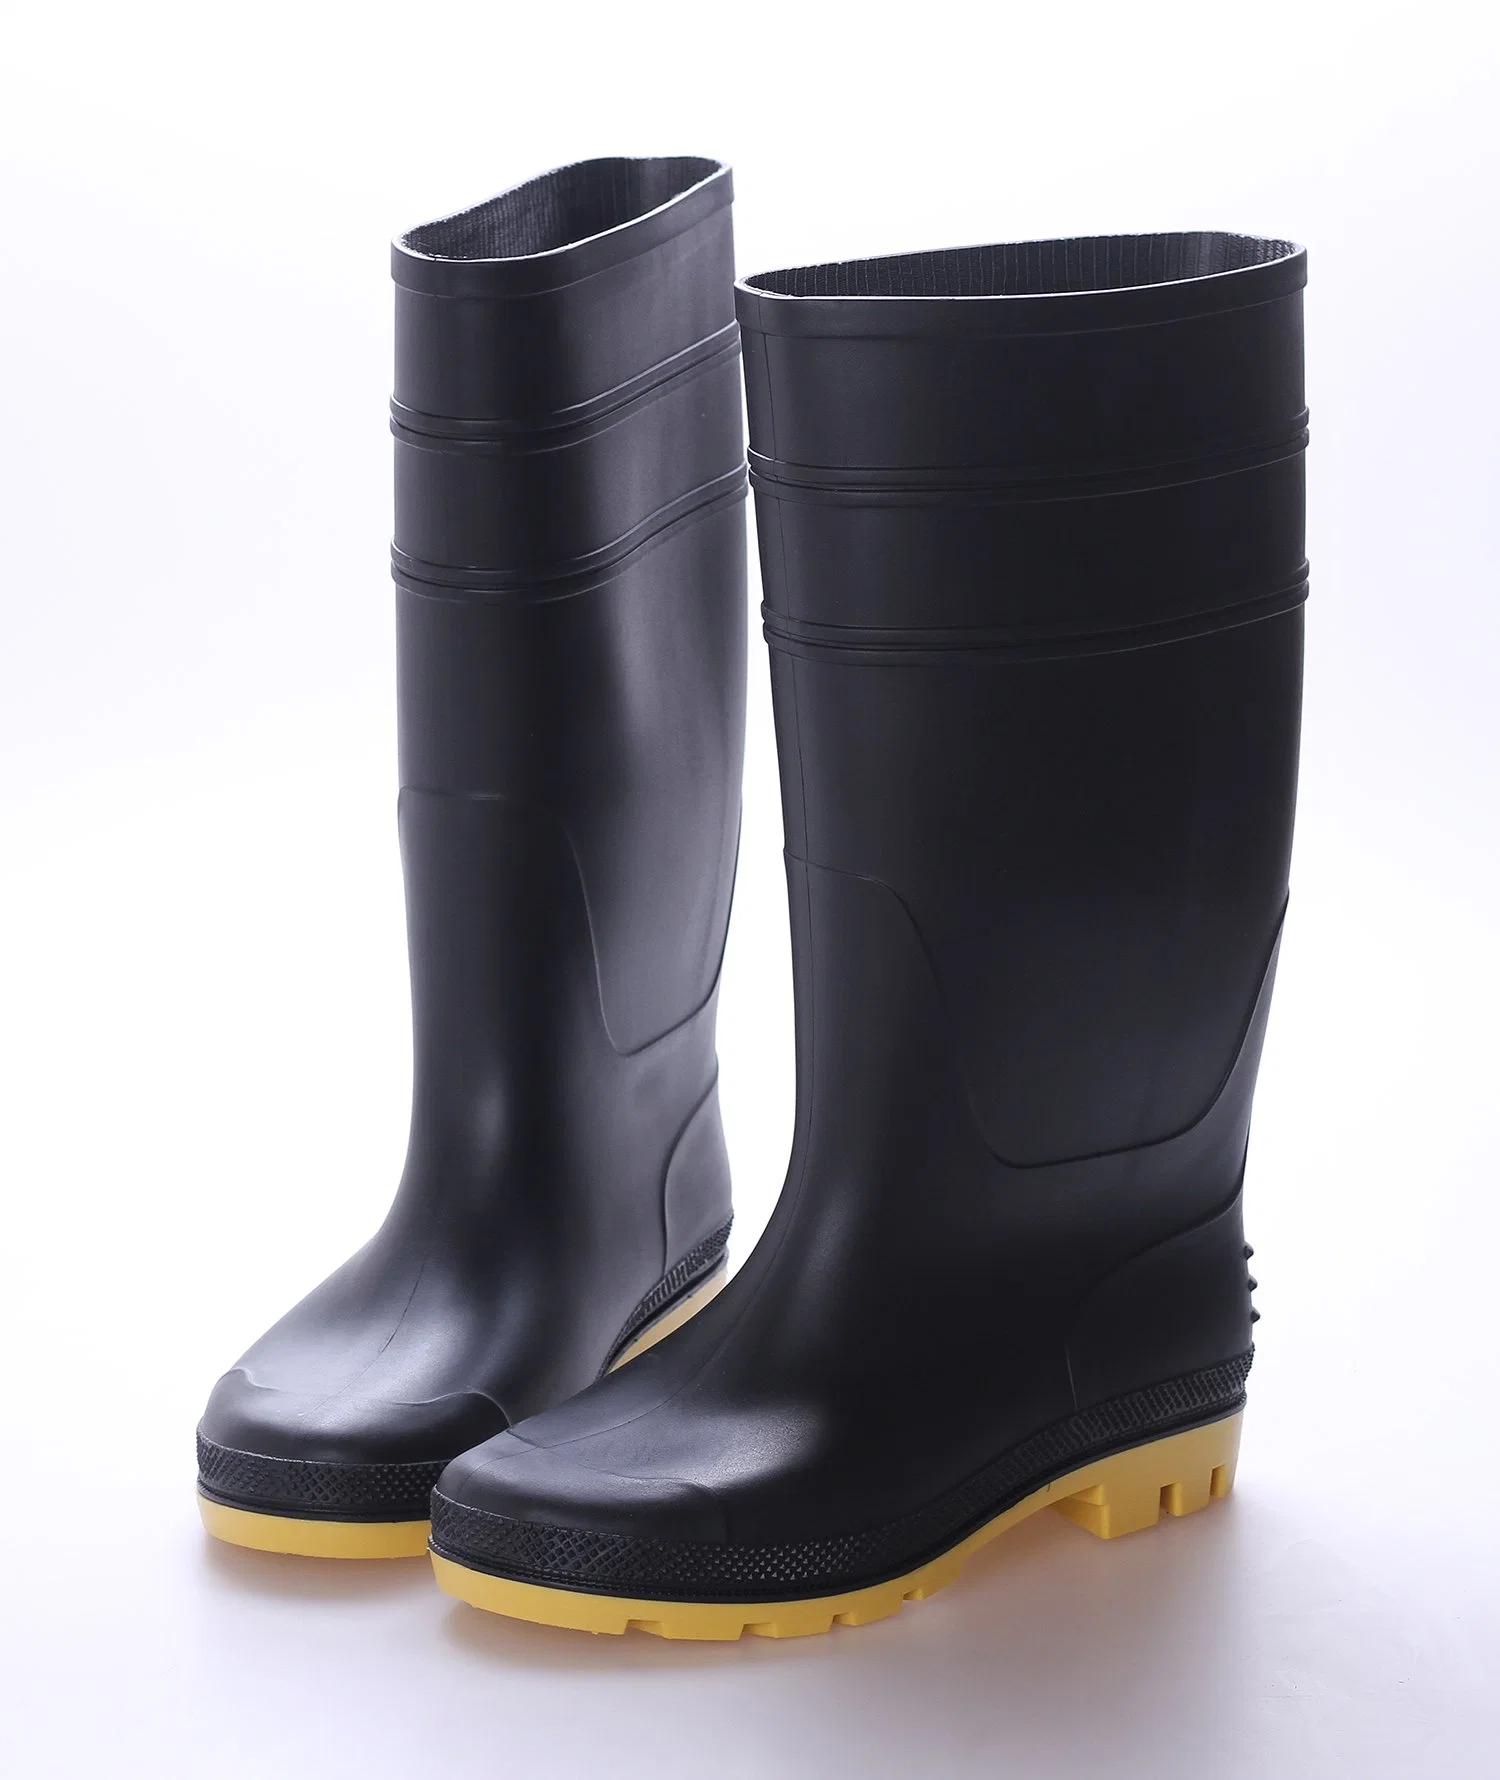 أحذية مطاطية للعمل مقاومة للماء وذات جودة عالية من PVC ذات سلامة عالية